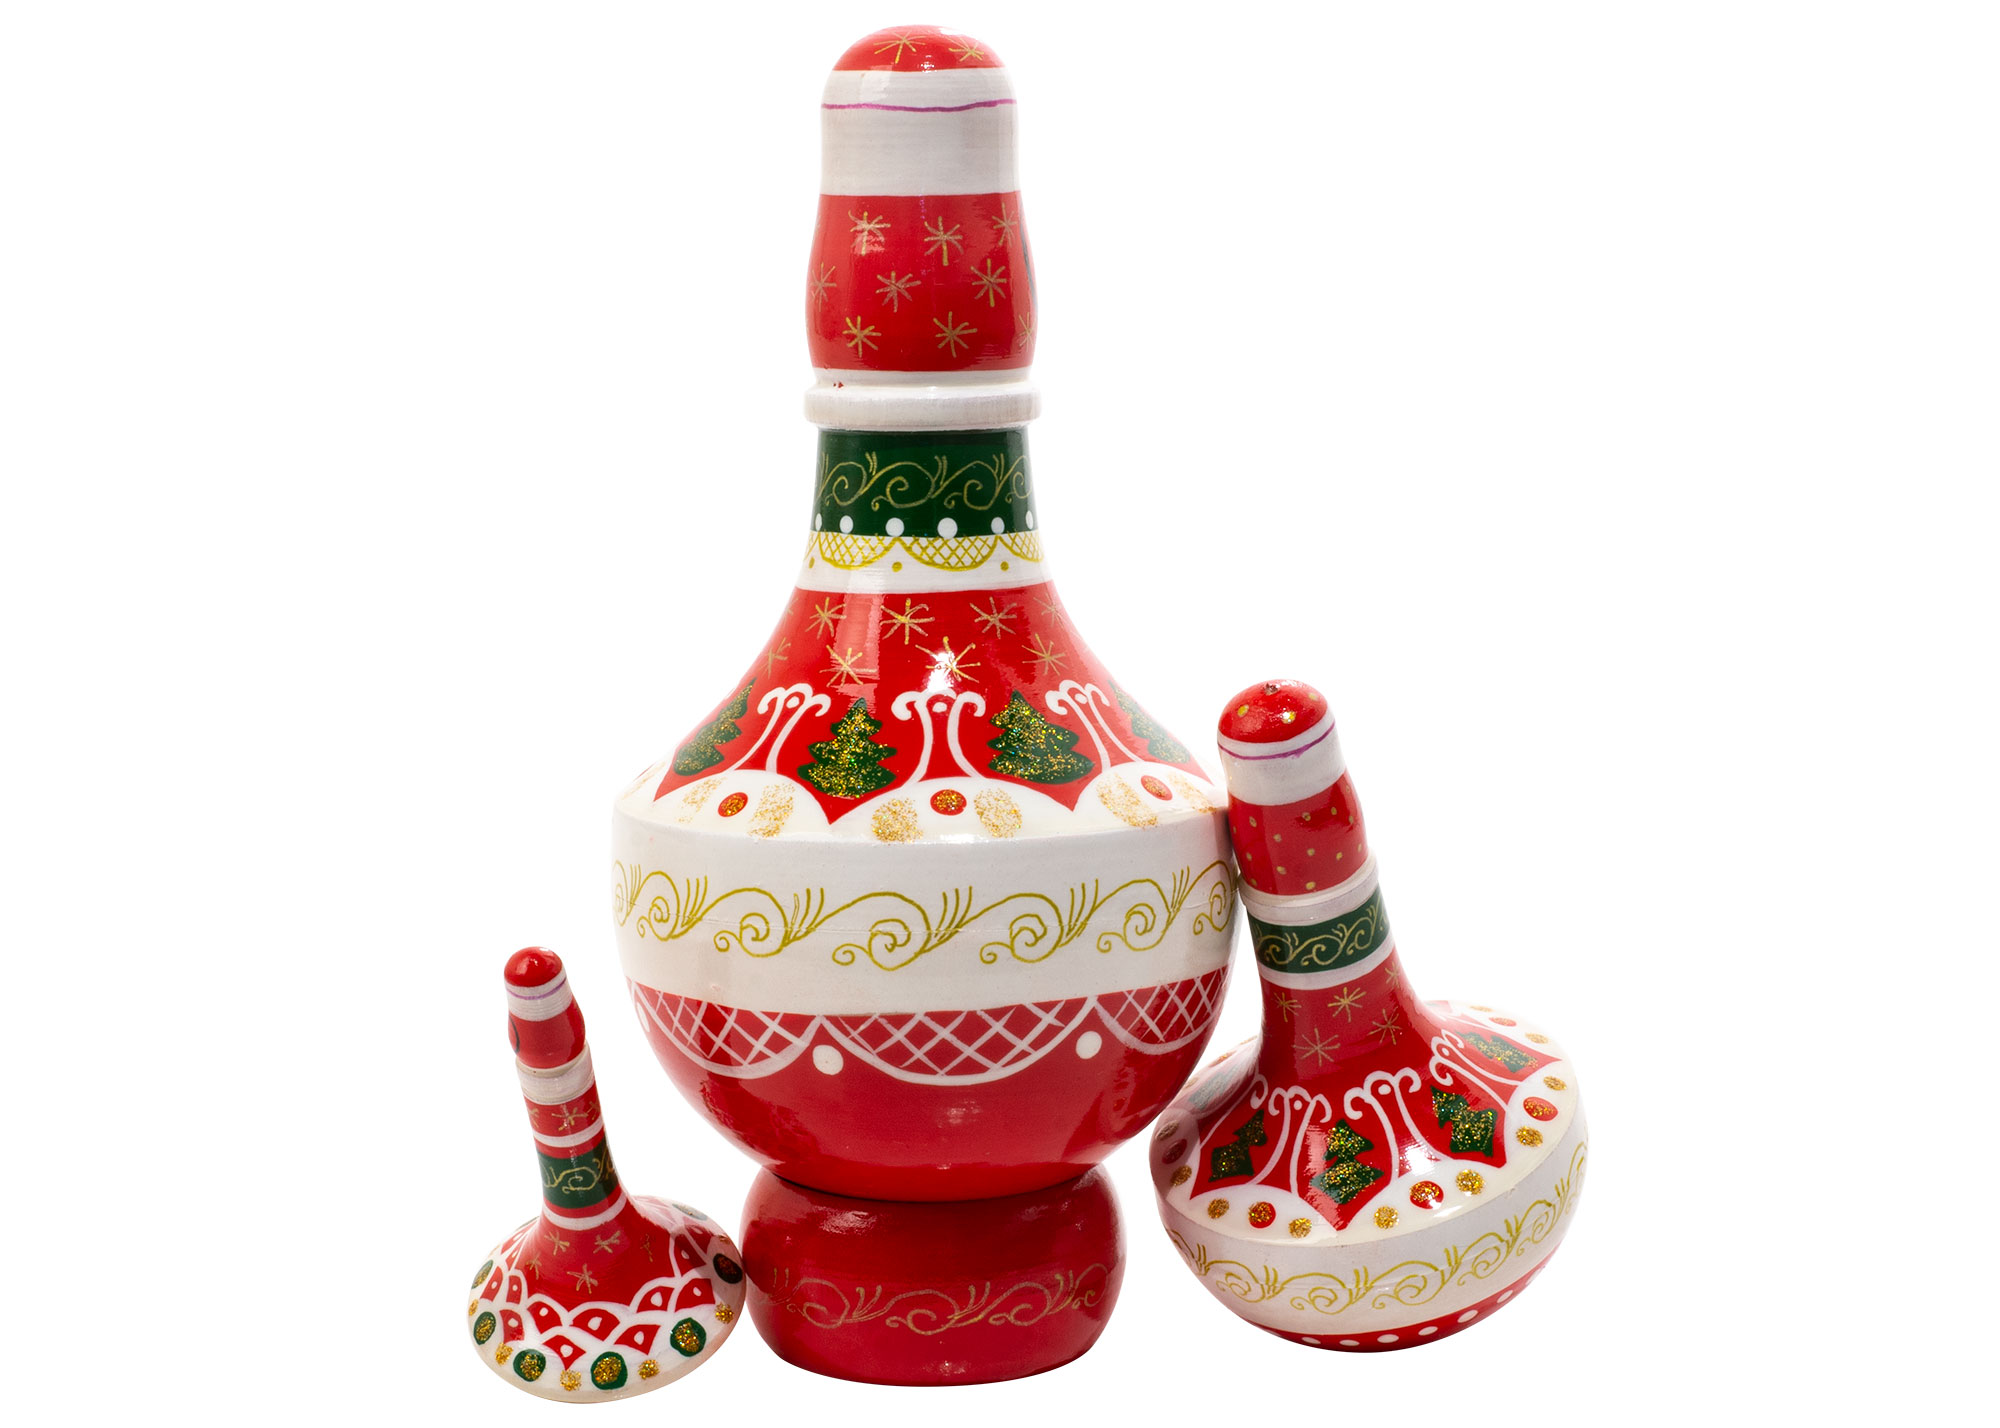 Buy Матрешка «Рождественский волчок» 3 места 12,5 см at GoldenCockerel.com